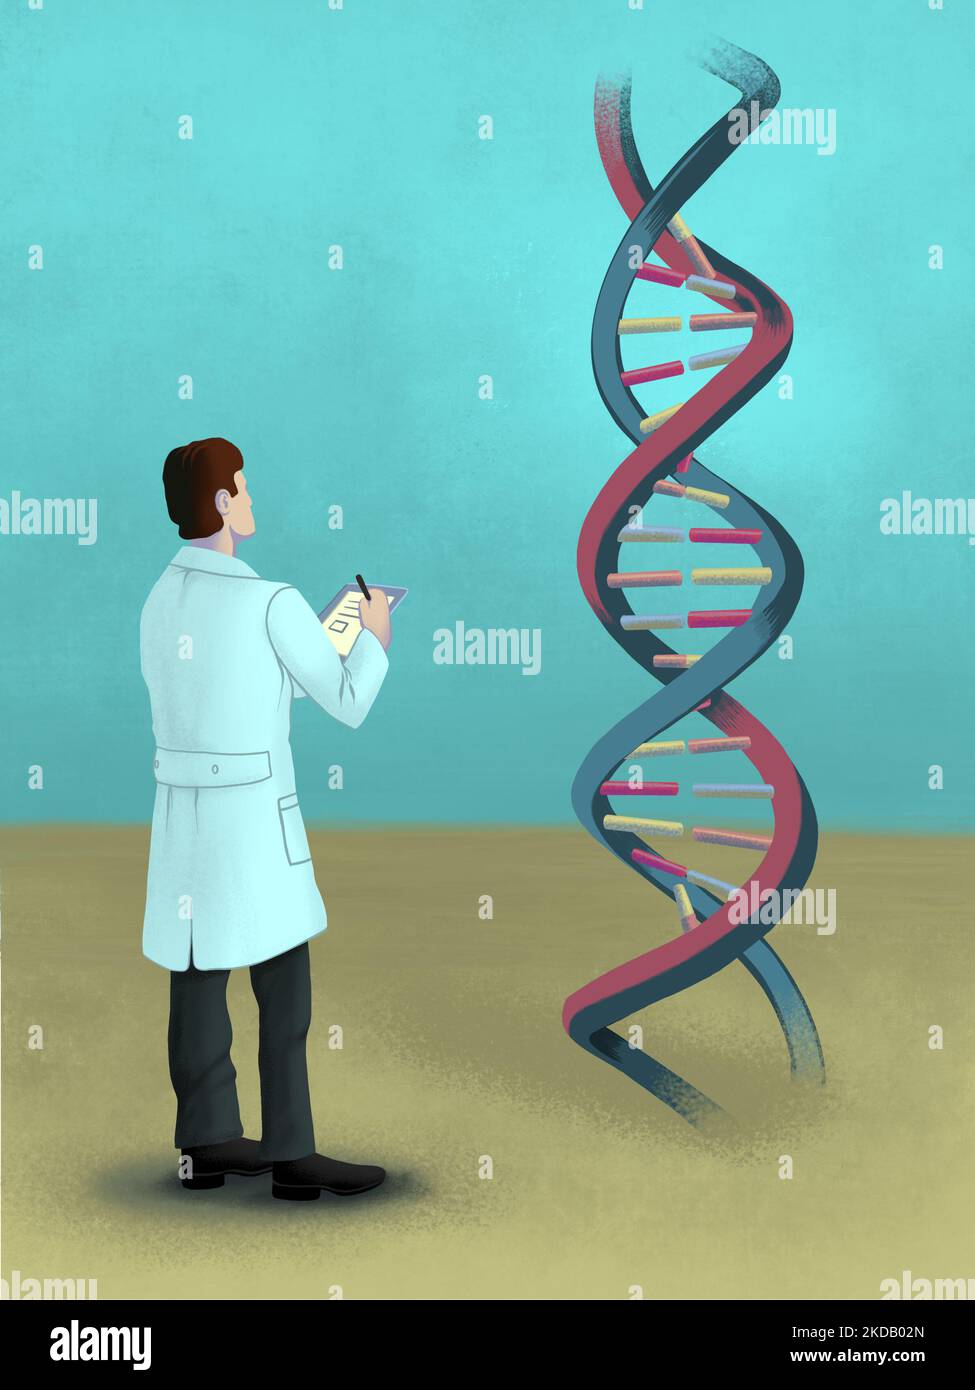 Wissenschaftler hält einen Notizblock und schaut auf eine DNA-Helix. Digitale handbemalte Illustration. Stockfoto